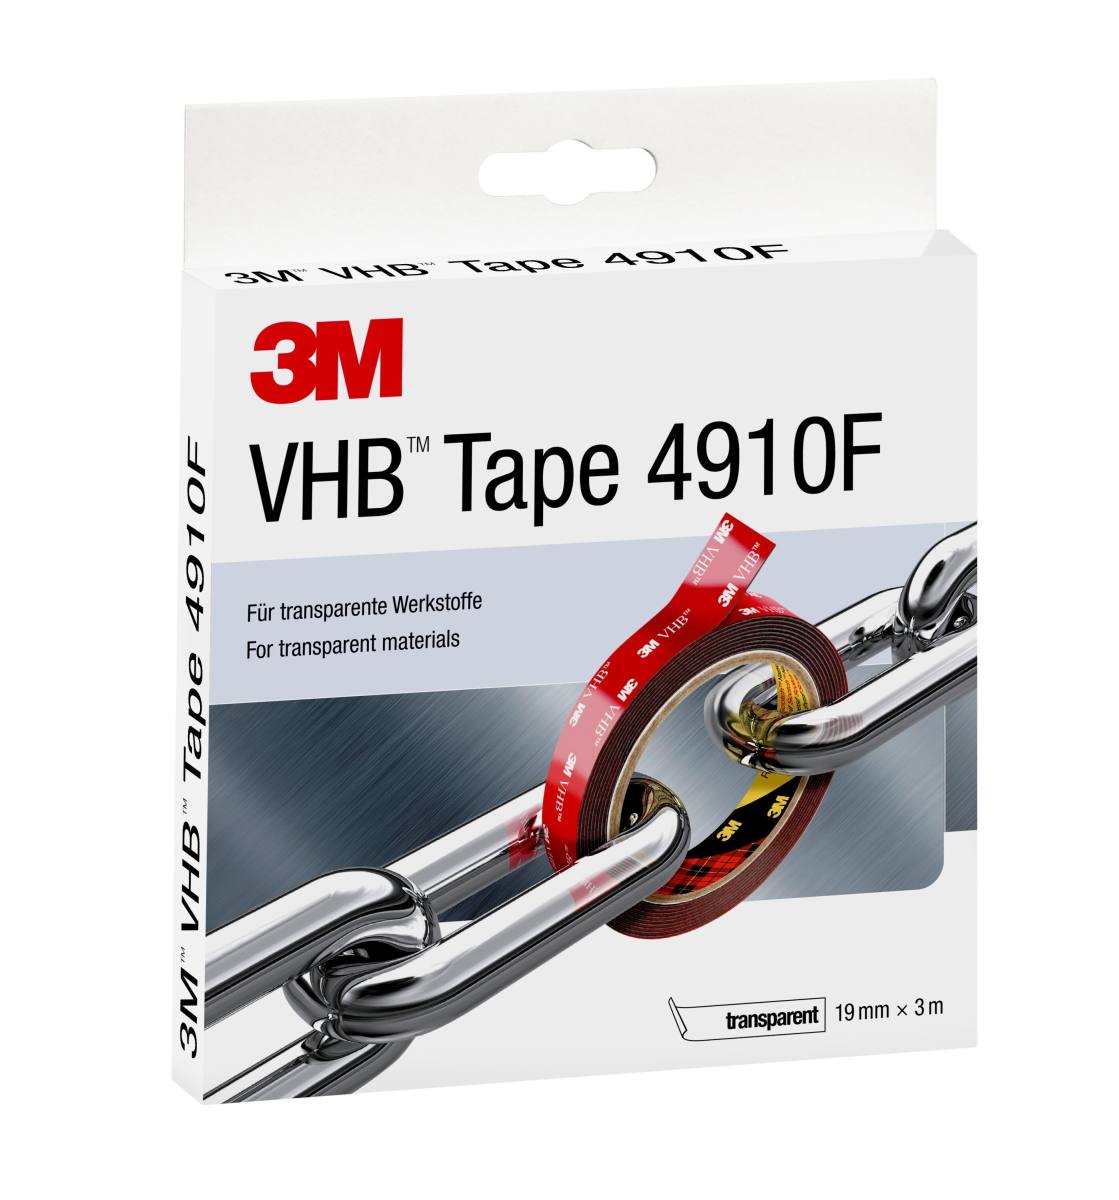 3M VHB adhesive tape 4910F, transparent, 19 mm x 3 m, 1 mm